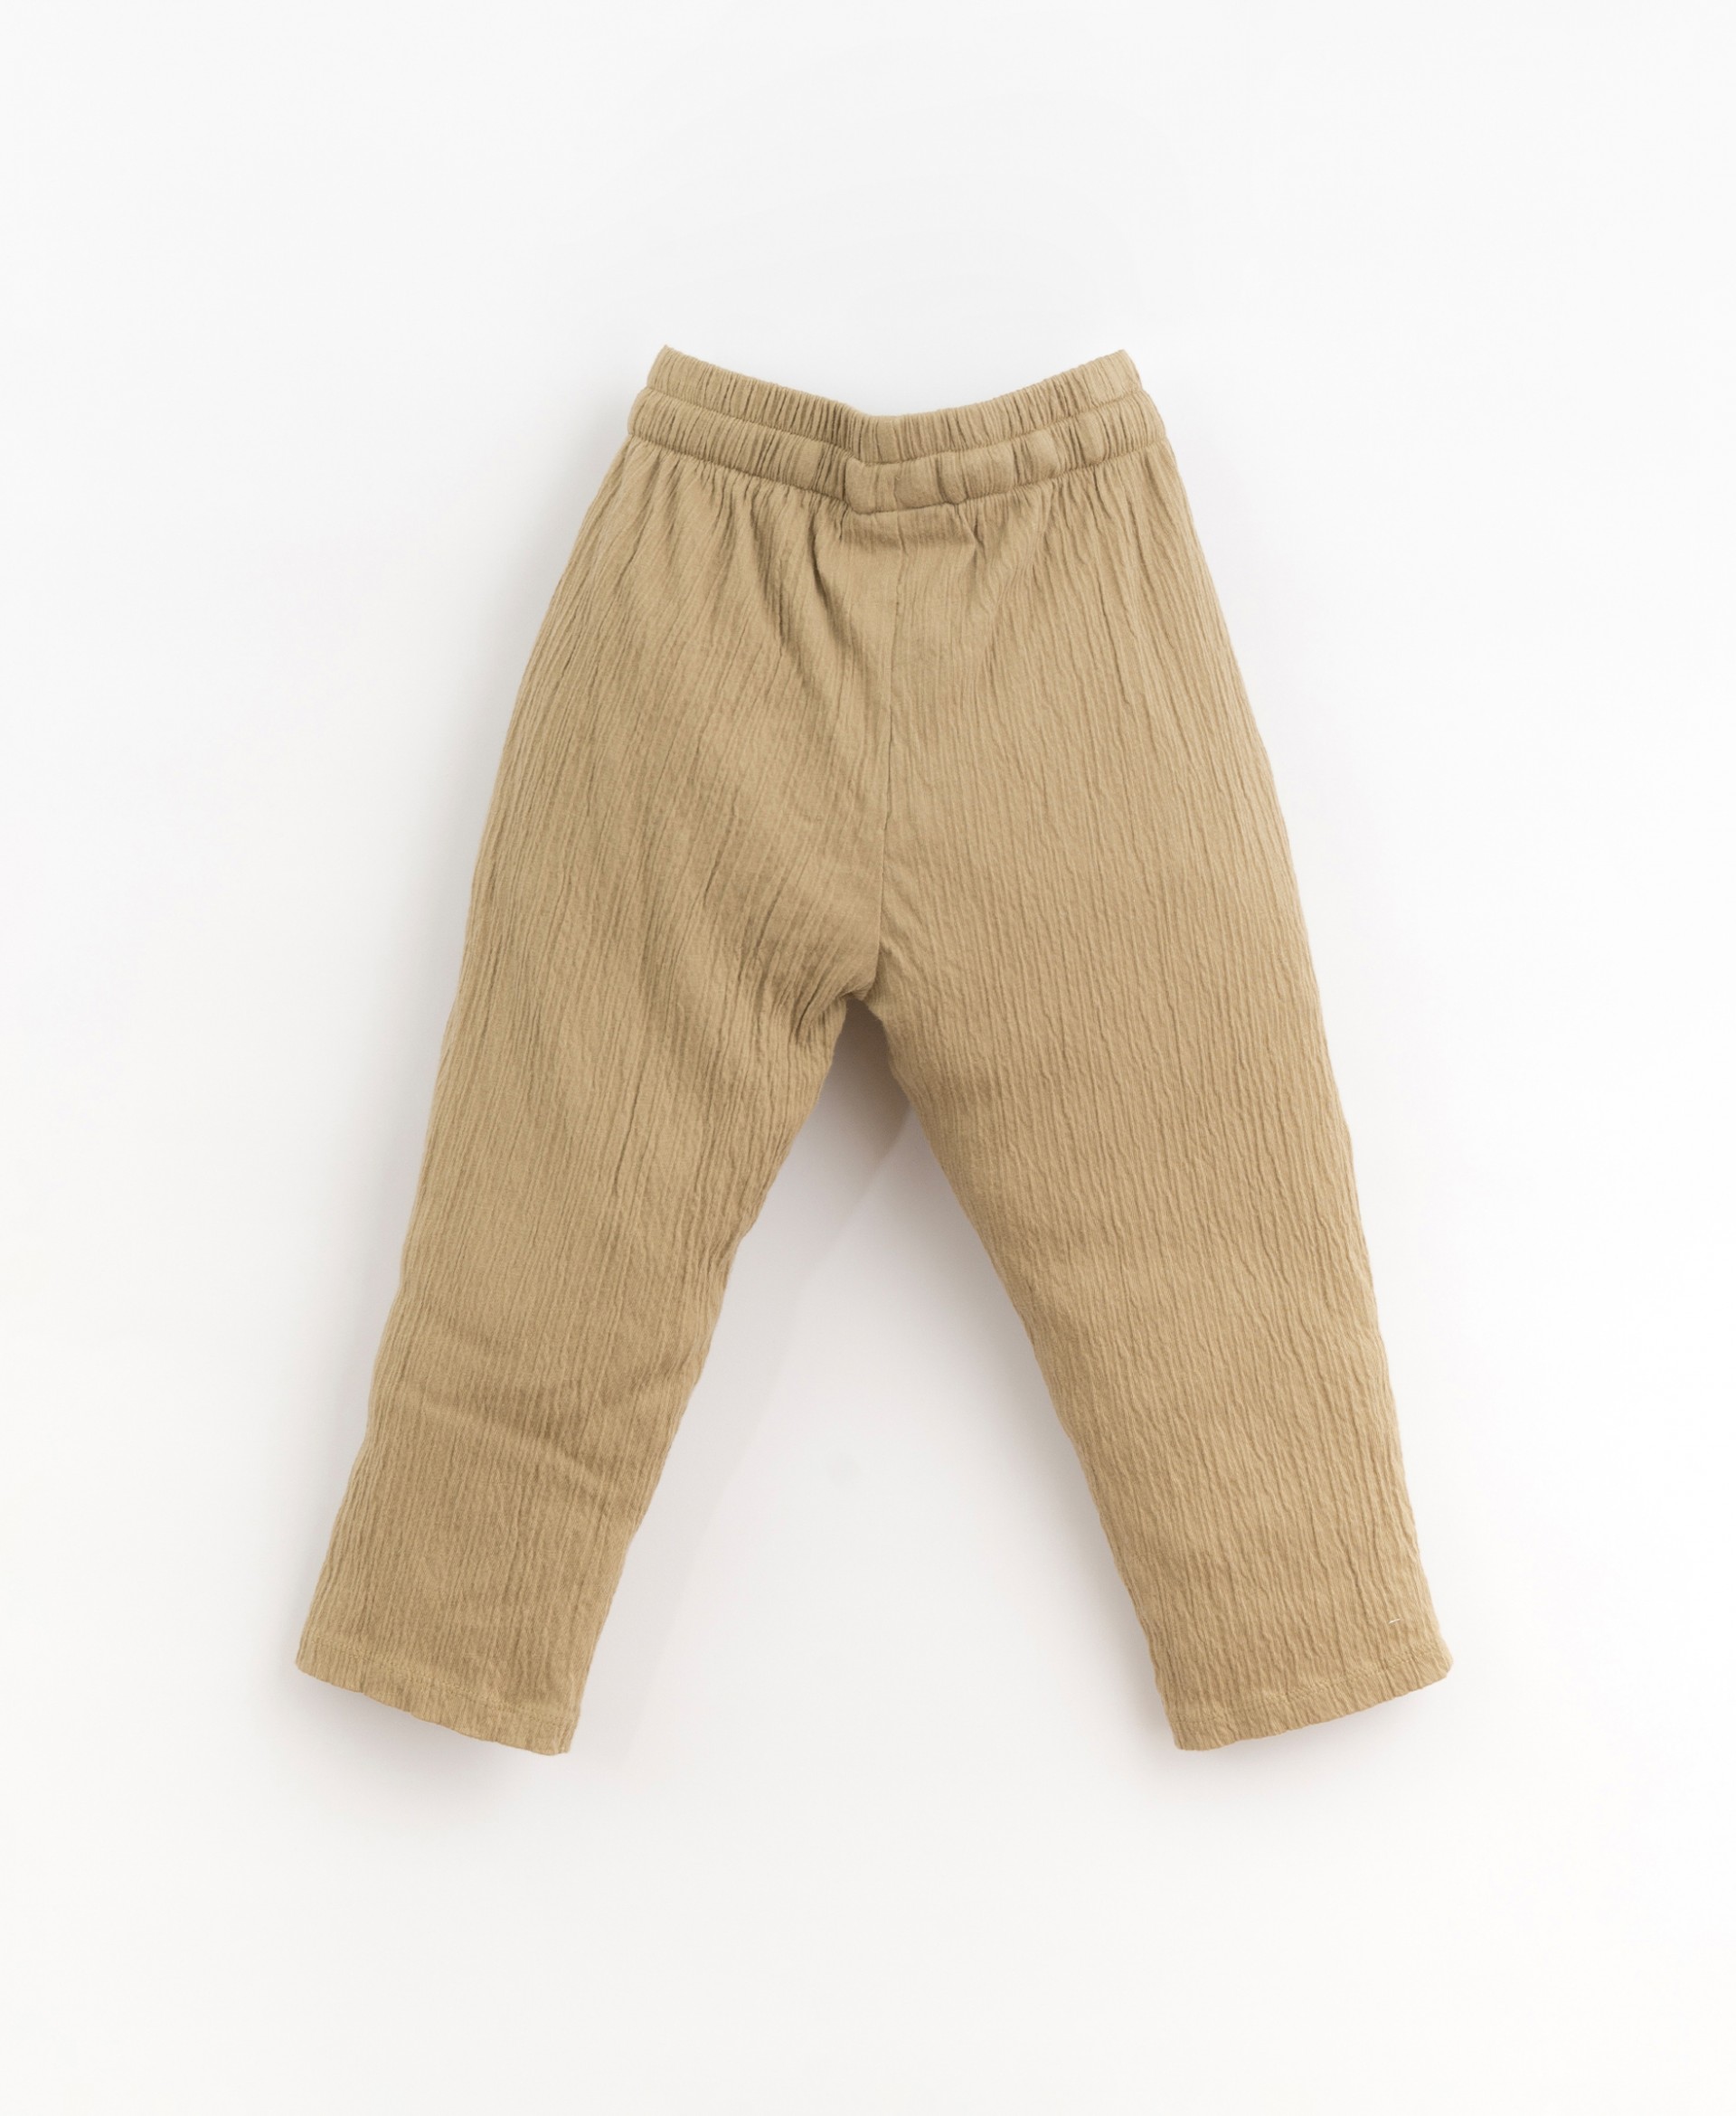 Pantaloni in maglia con cordino regolabile| Organic Care